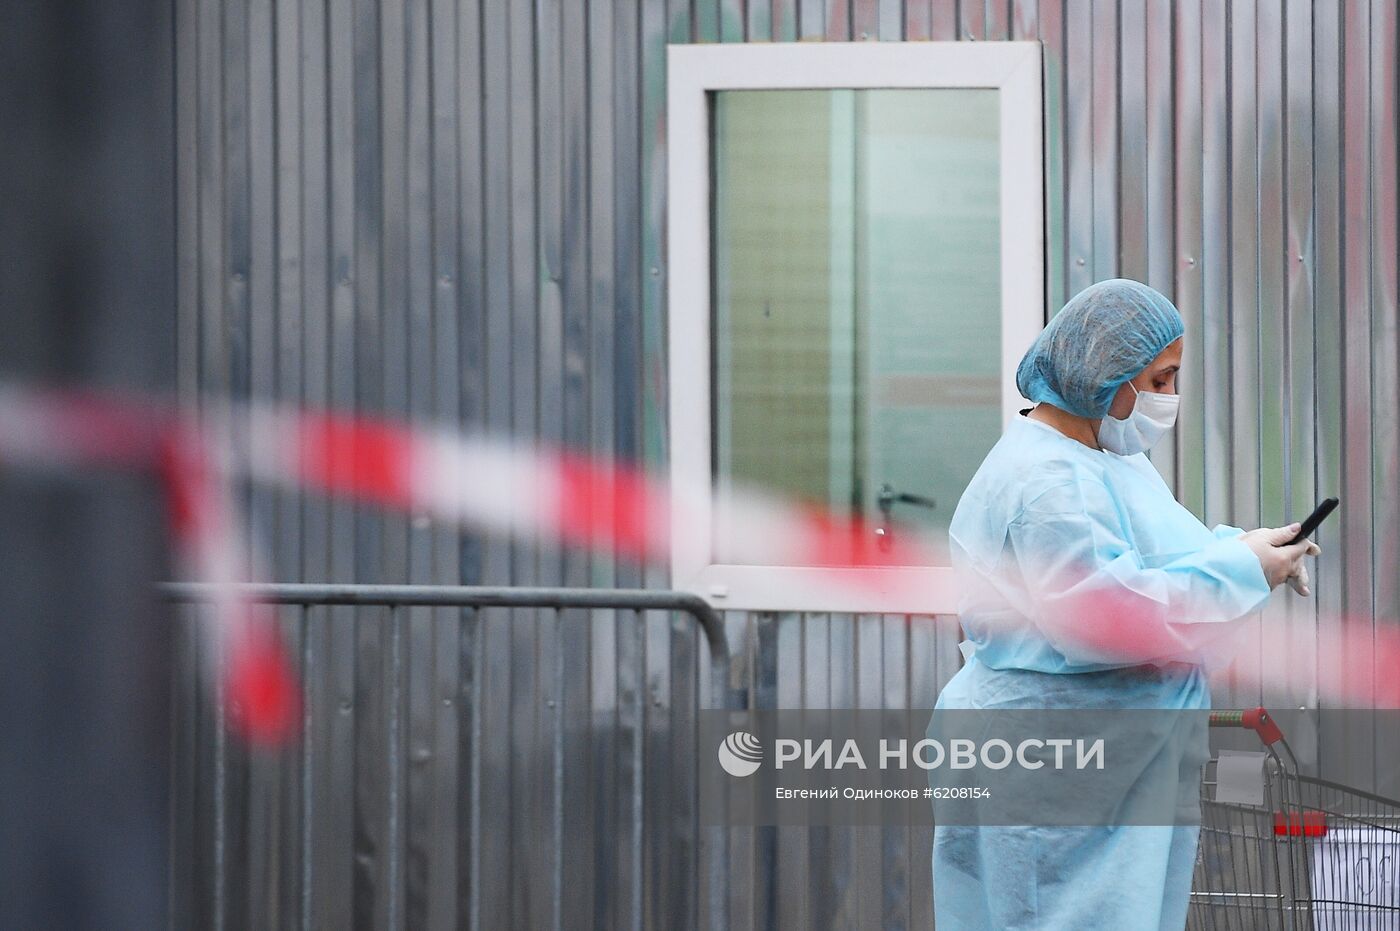 Филатовская больница готова для приема пациентов с подозрением на коронавирусную инфекцию 